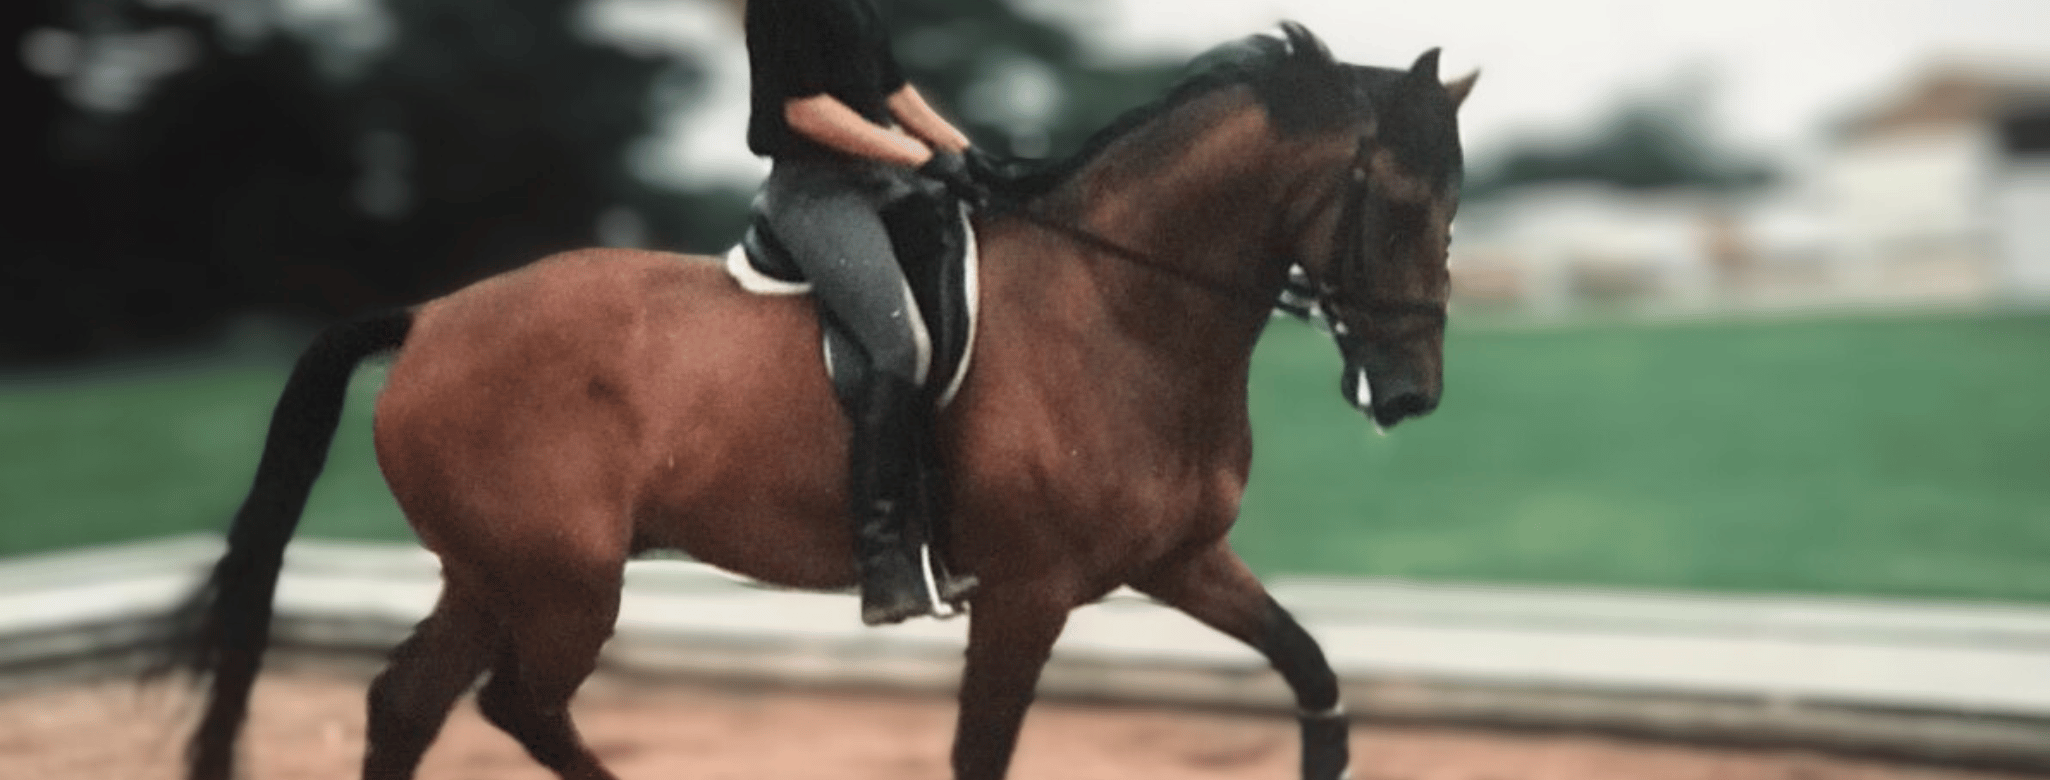 Horse and rider biomechanics